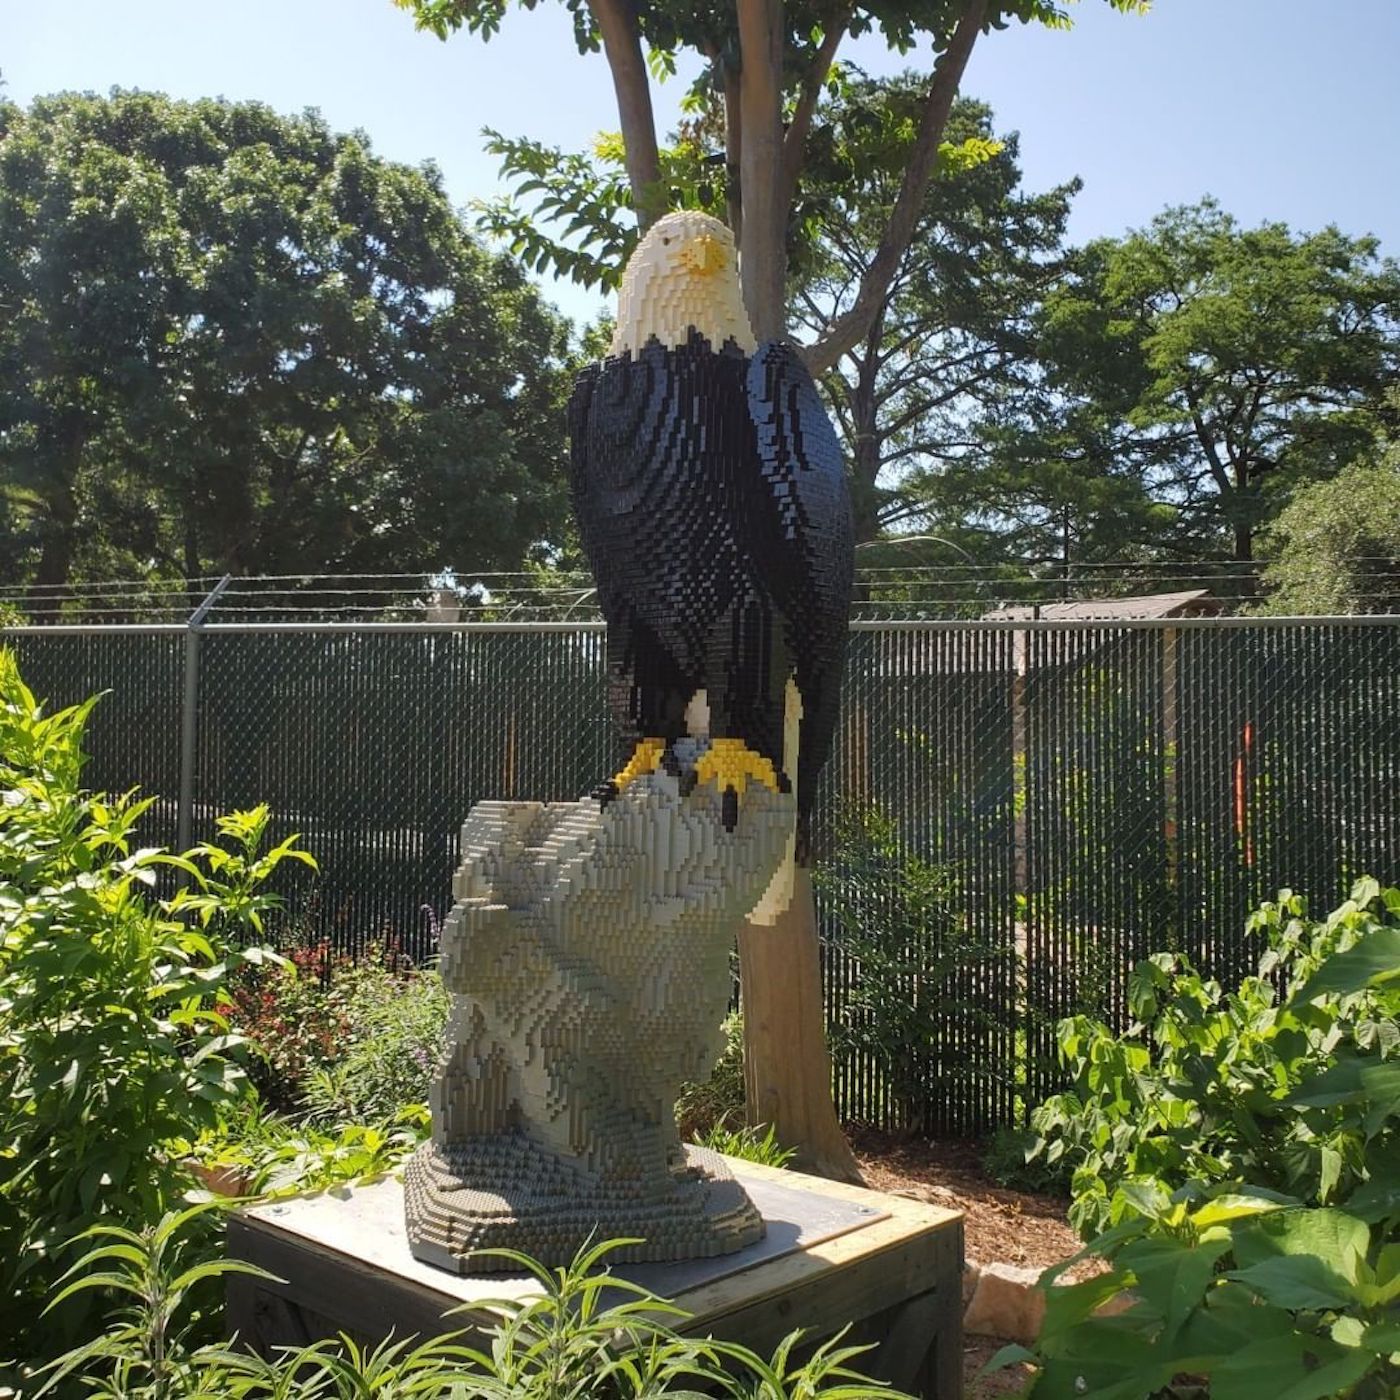 Le zoo de San Antonio dévoile des répliques d'animaux avec des millions de LEGO